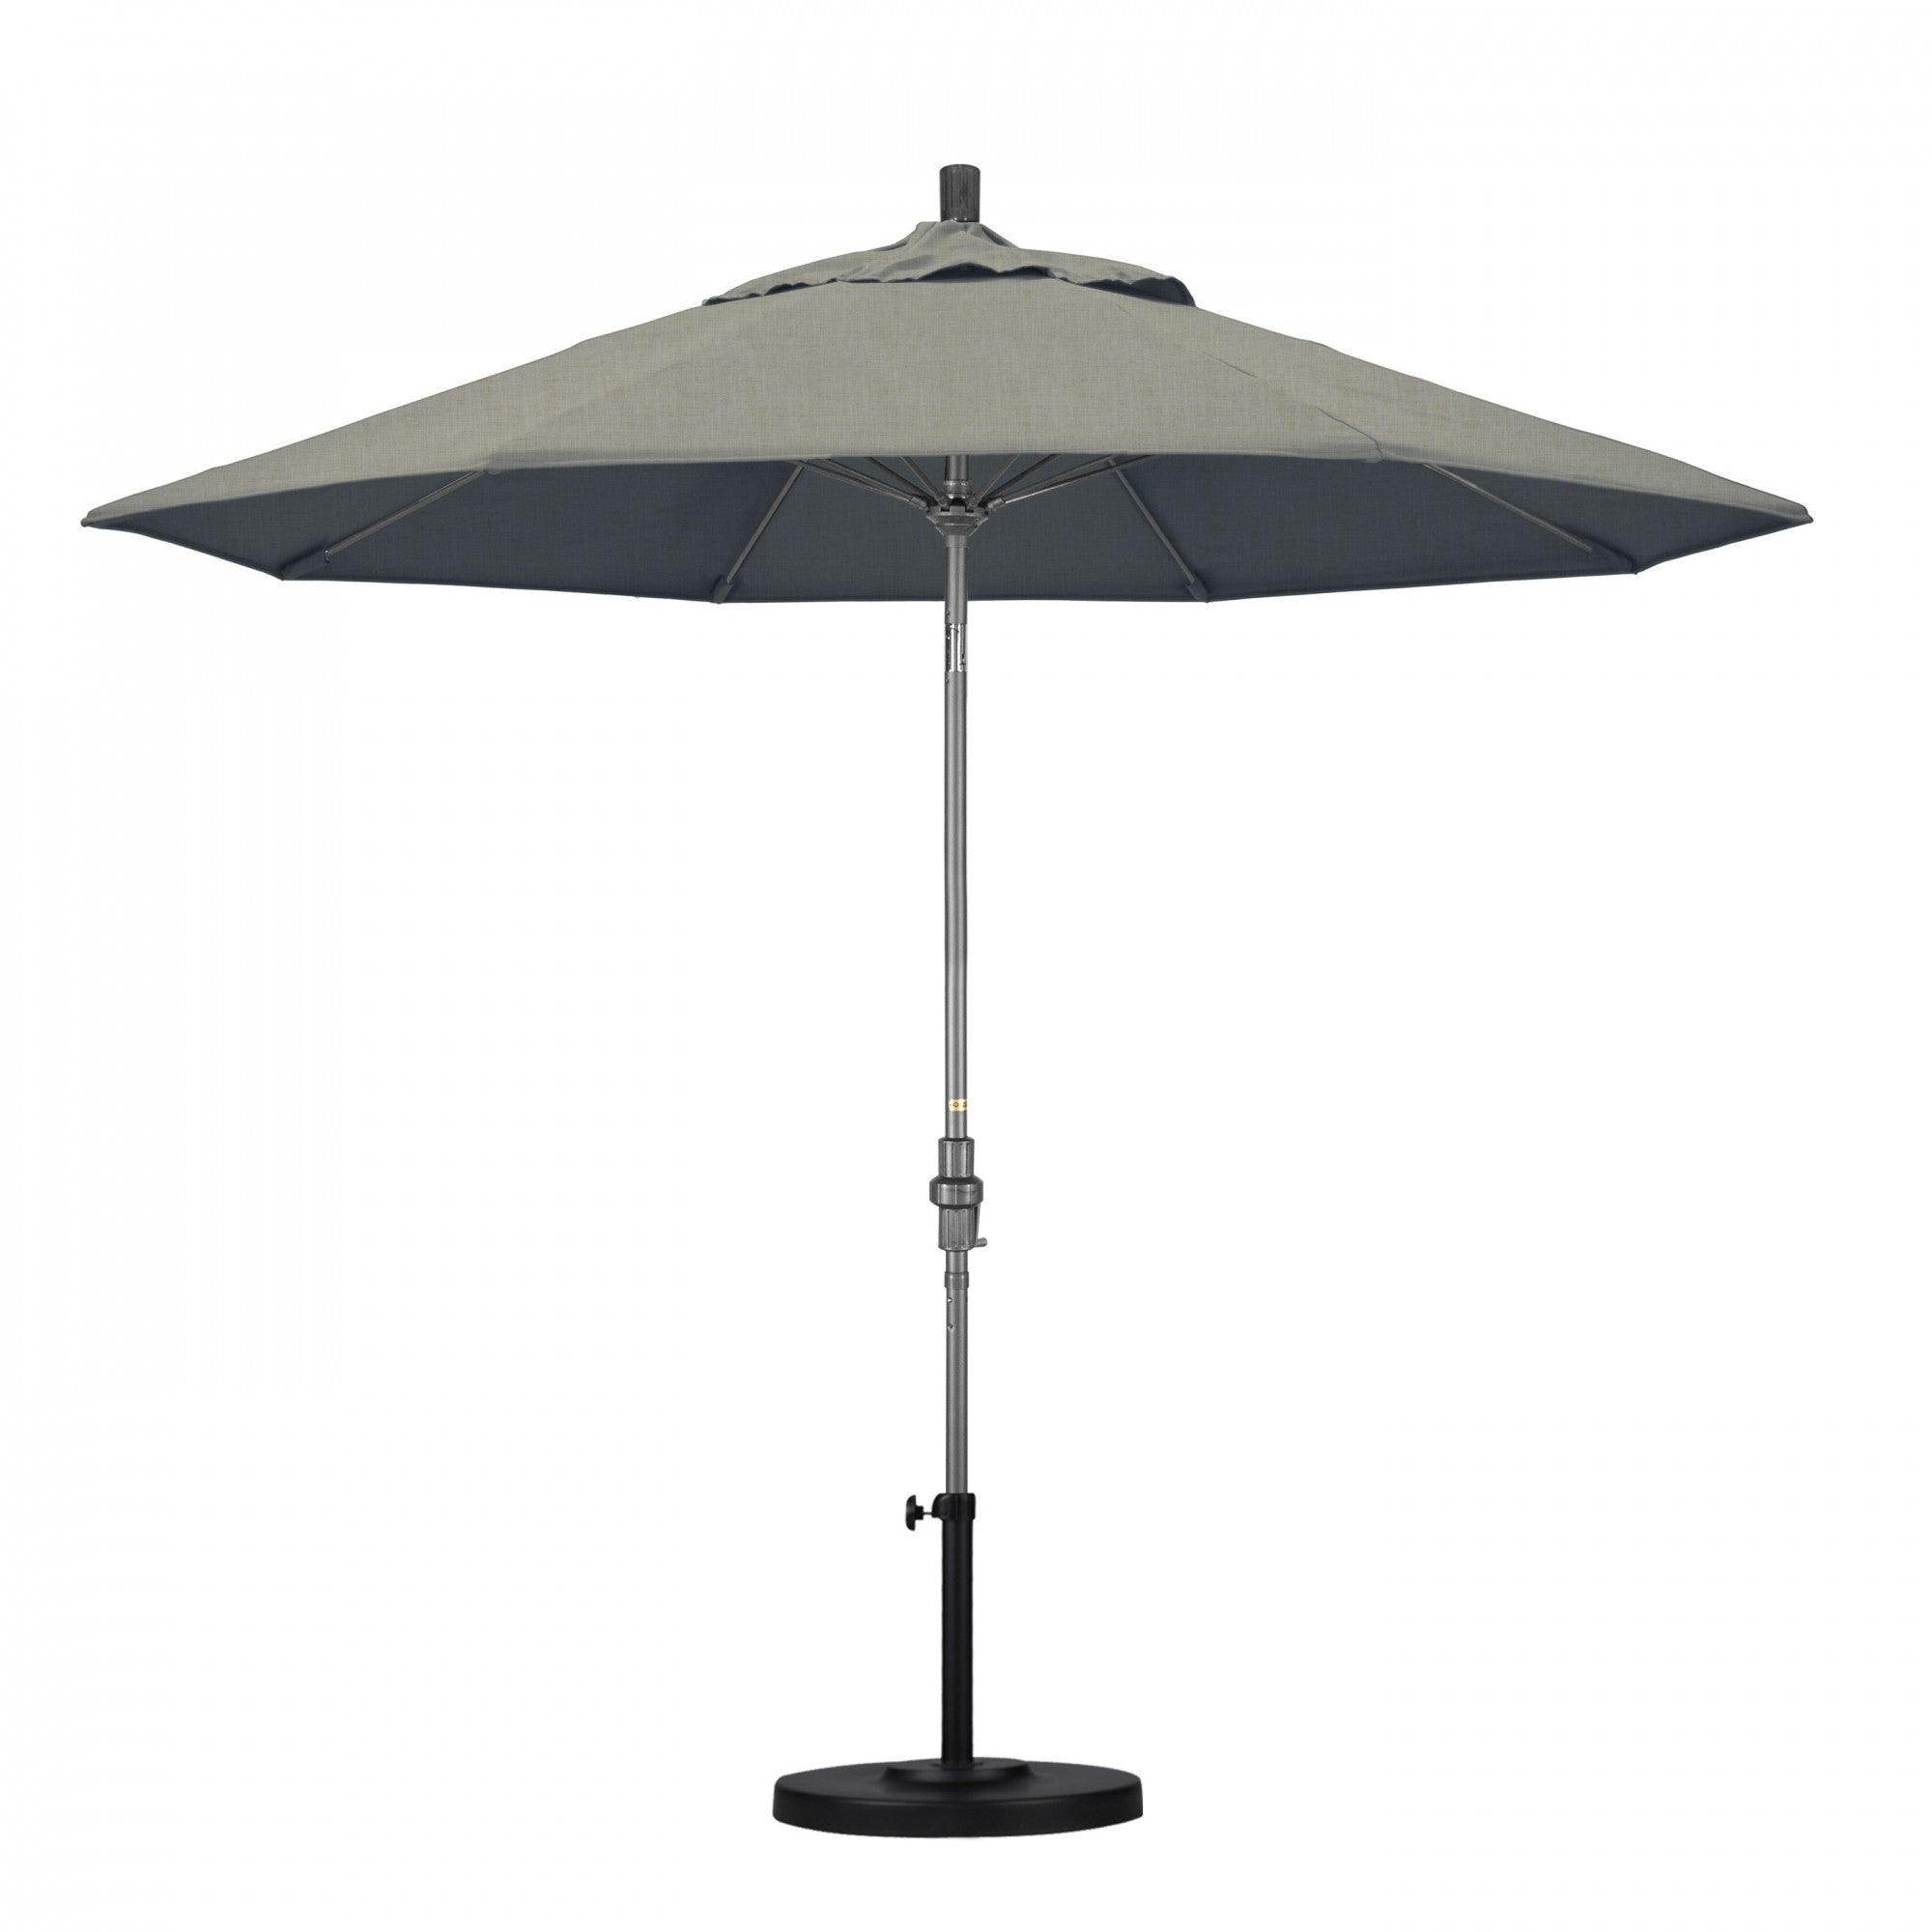 California Umbrella - 9' - Patio Umbrella Umbrella - Aluminum Pole - Spectrum Dove - Sunbrella  - GSCUF908010-48032